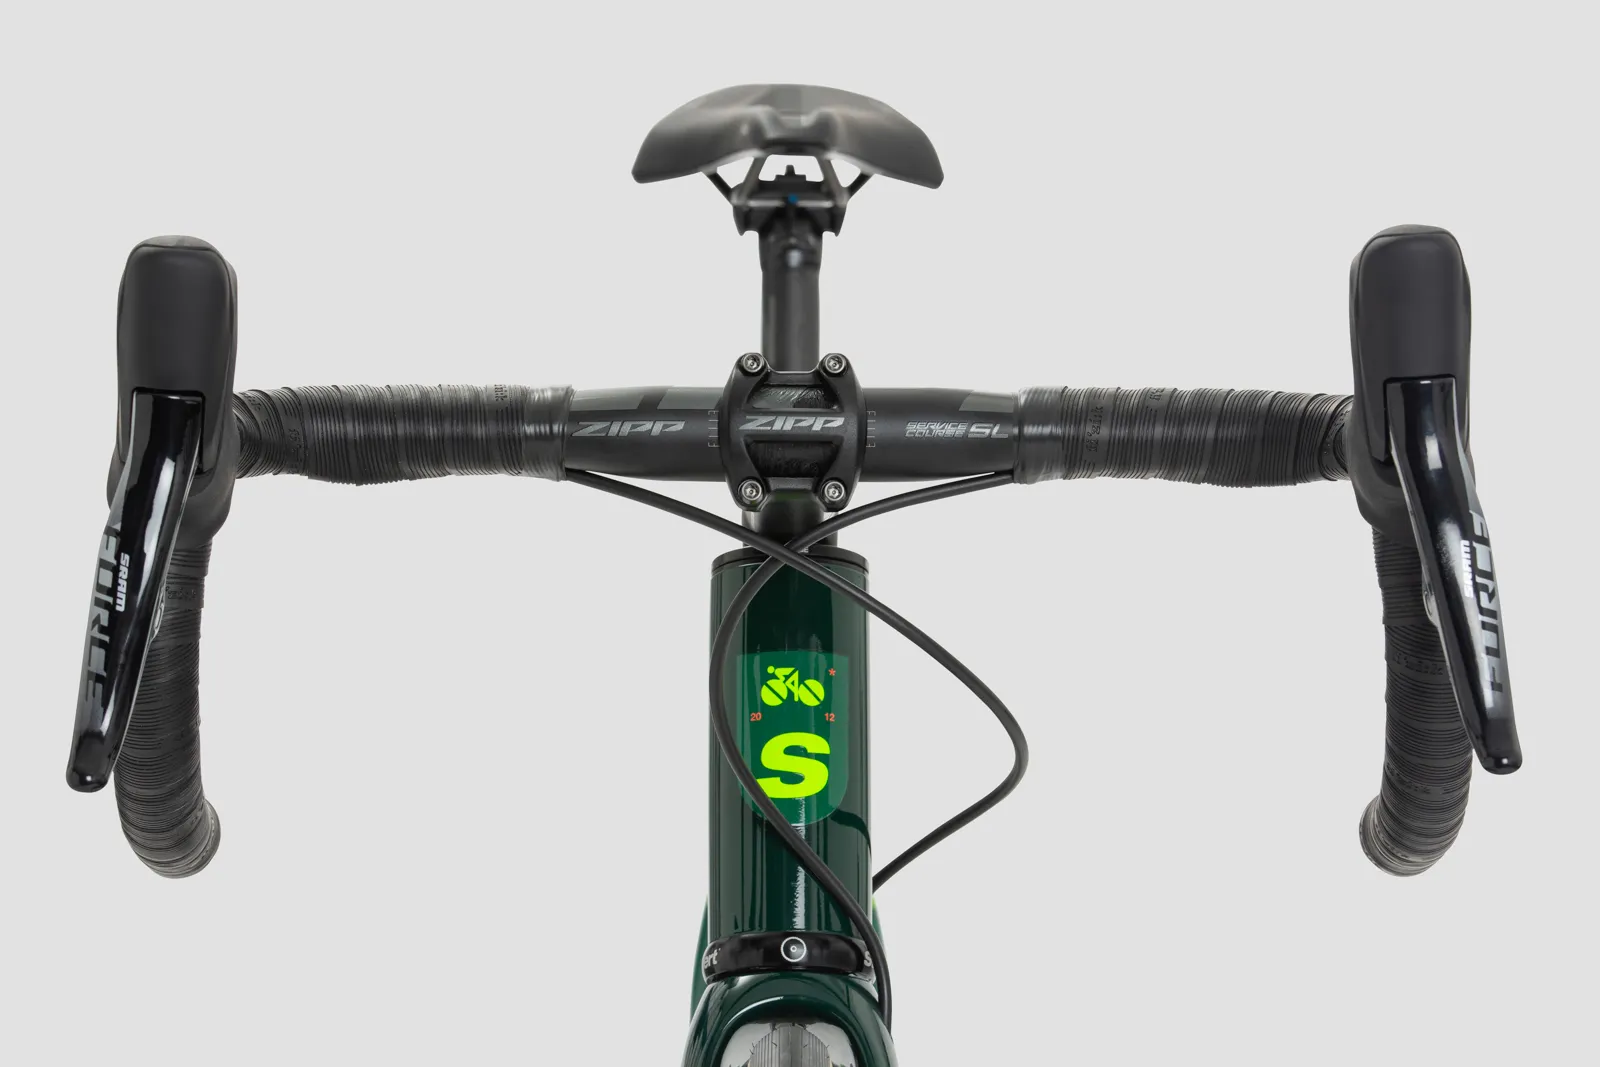 Kreissäge DISC Cobra Green Road Bike - Zipp Handlebar
